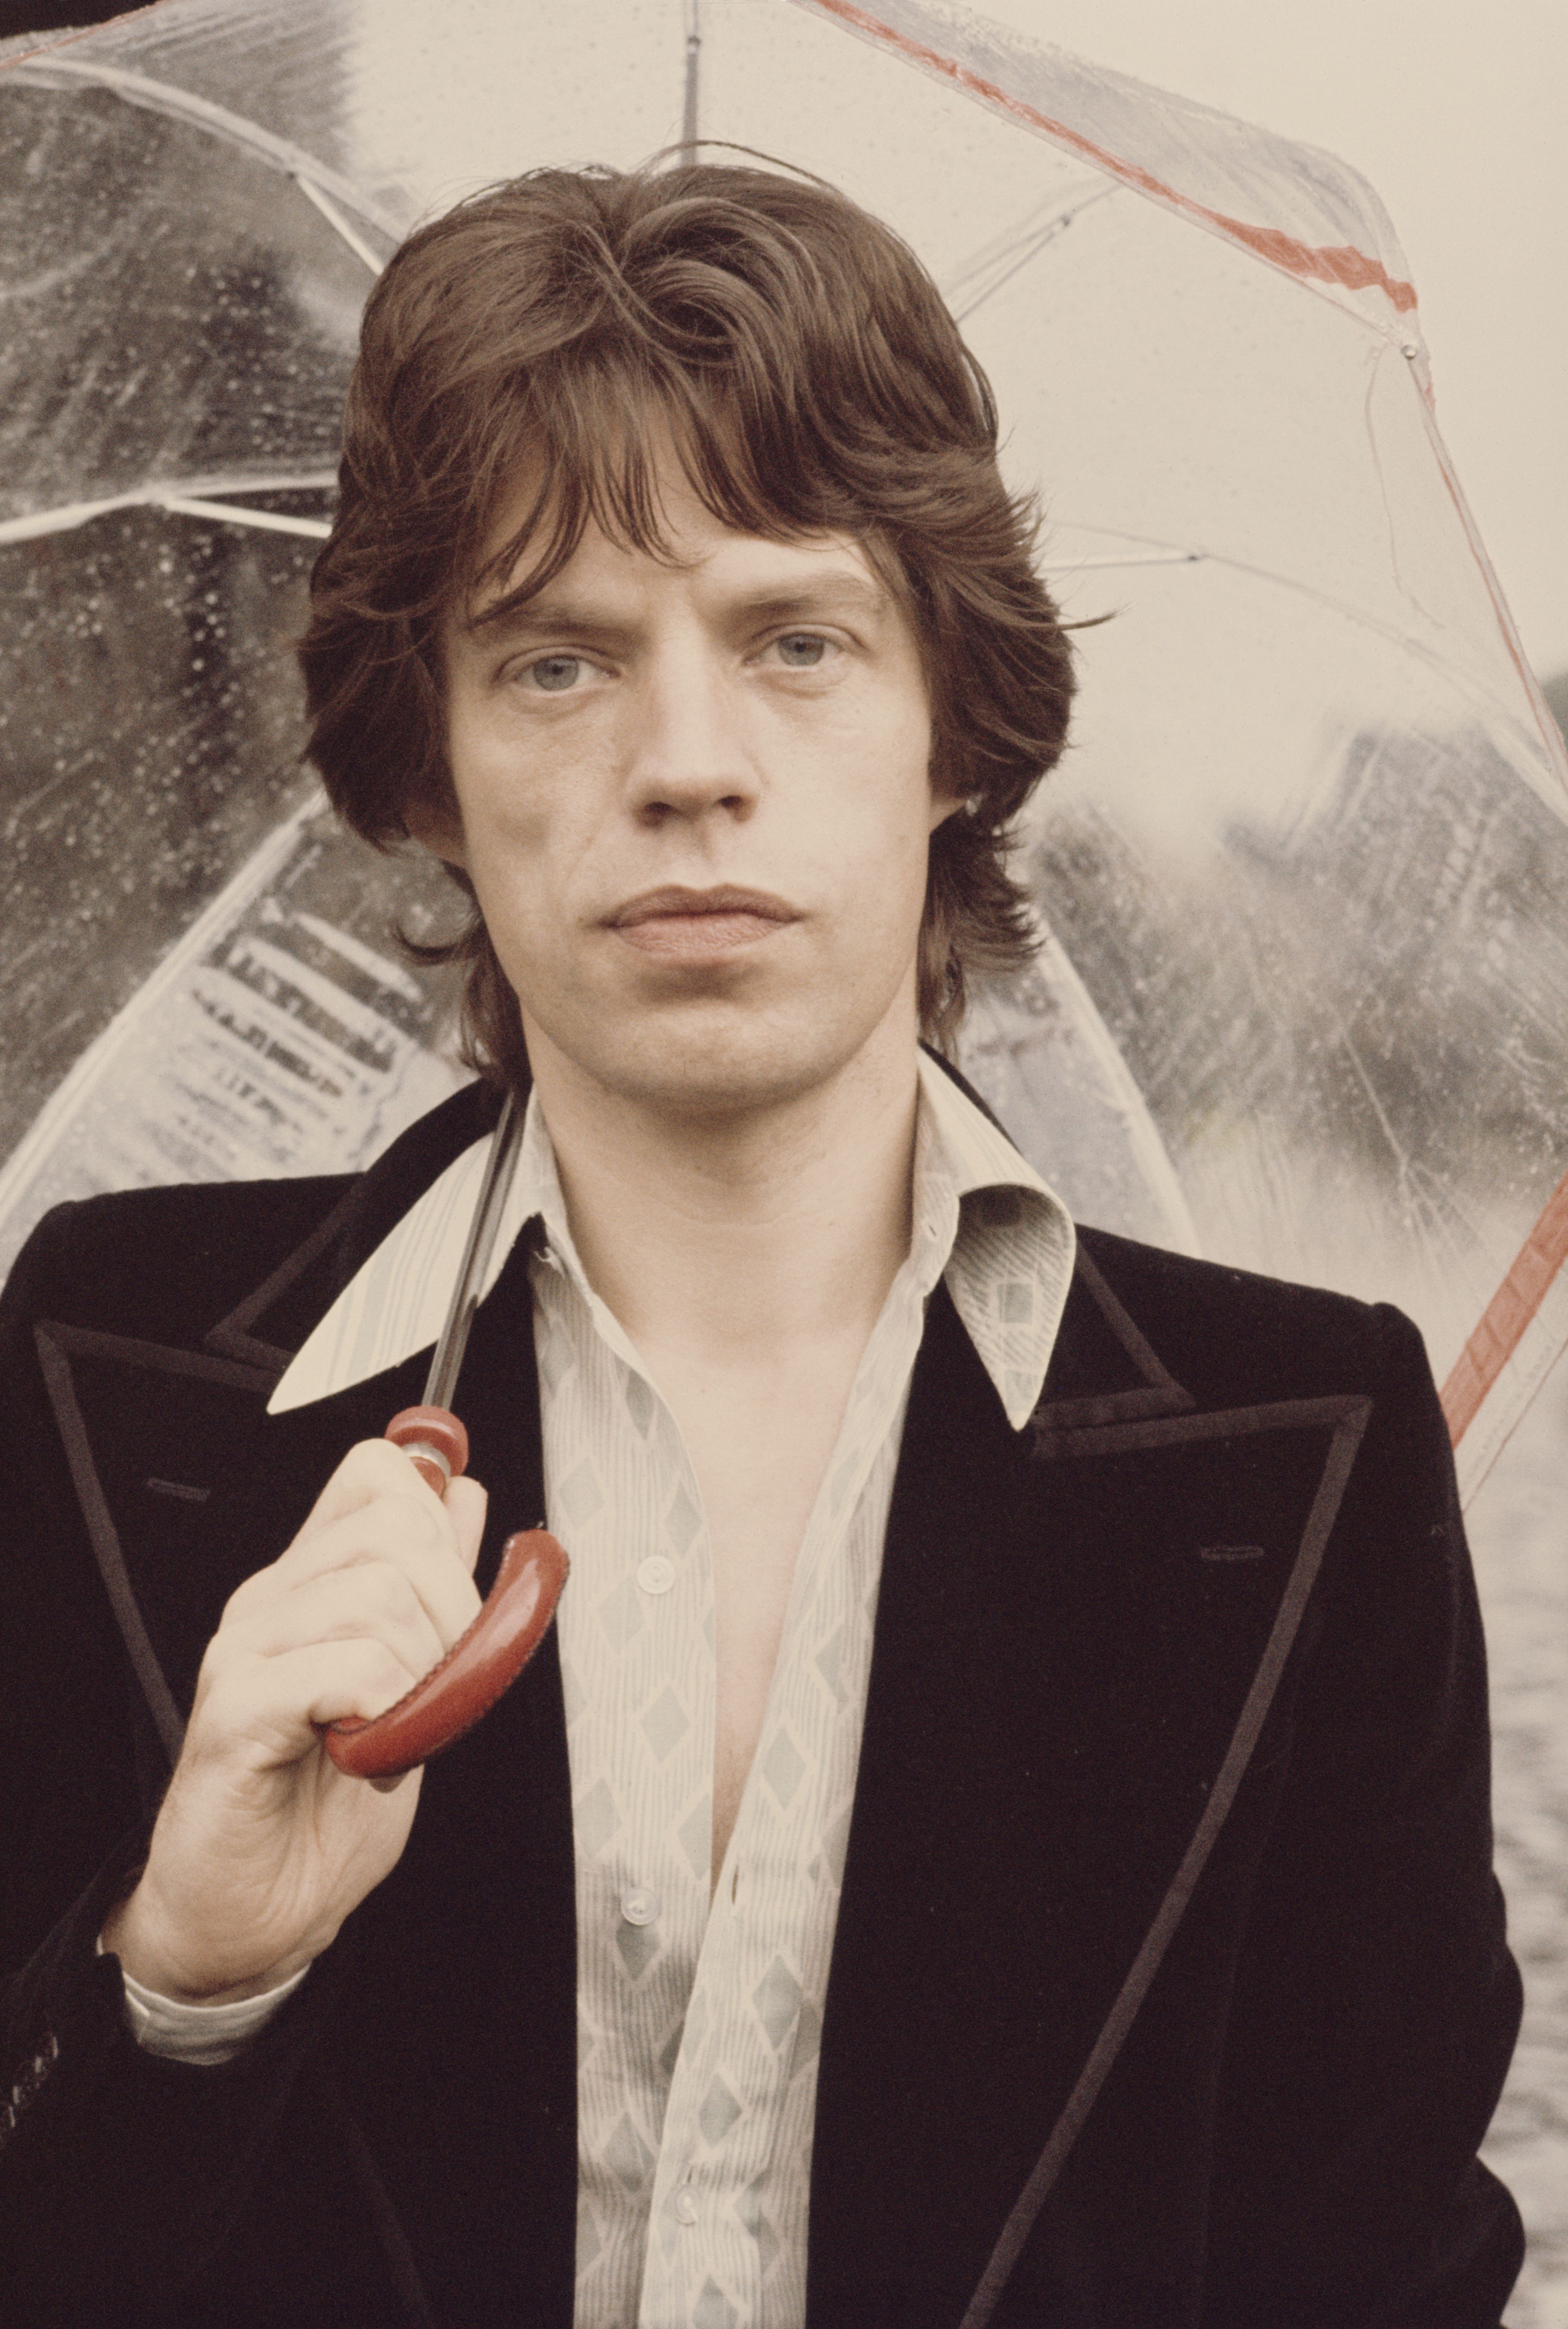 Mick Jagger de los Rolling Stones sosteniendo un paraguas en el castillo de Carmarthen en Gales, el 23 de julio de 1973. | Foto: Getty Images